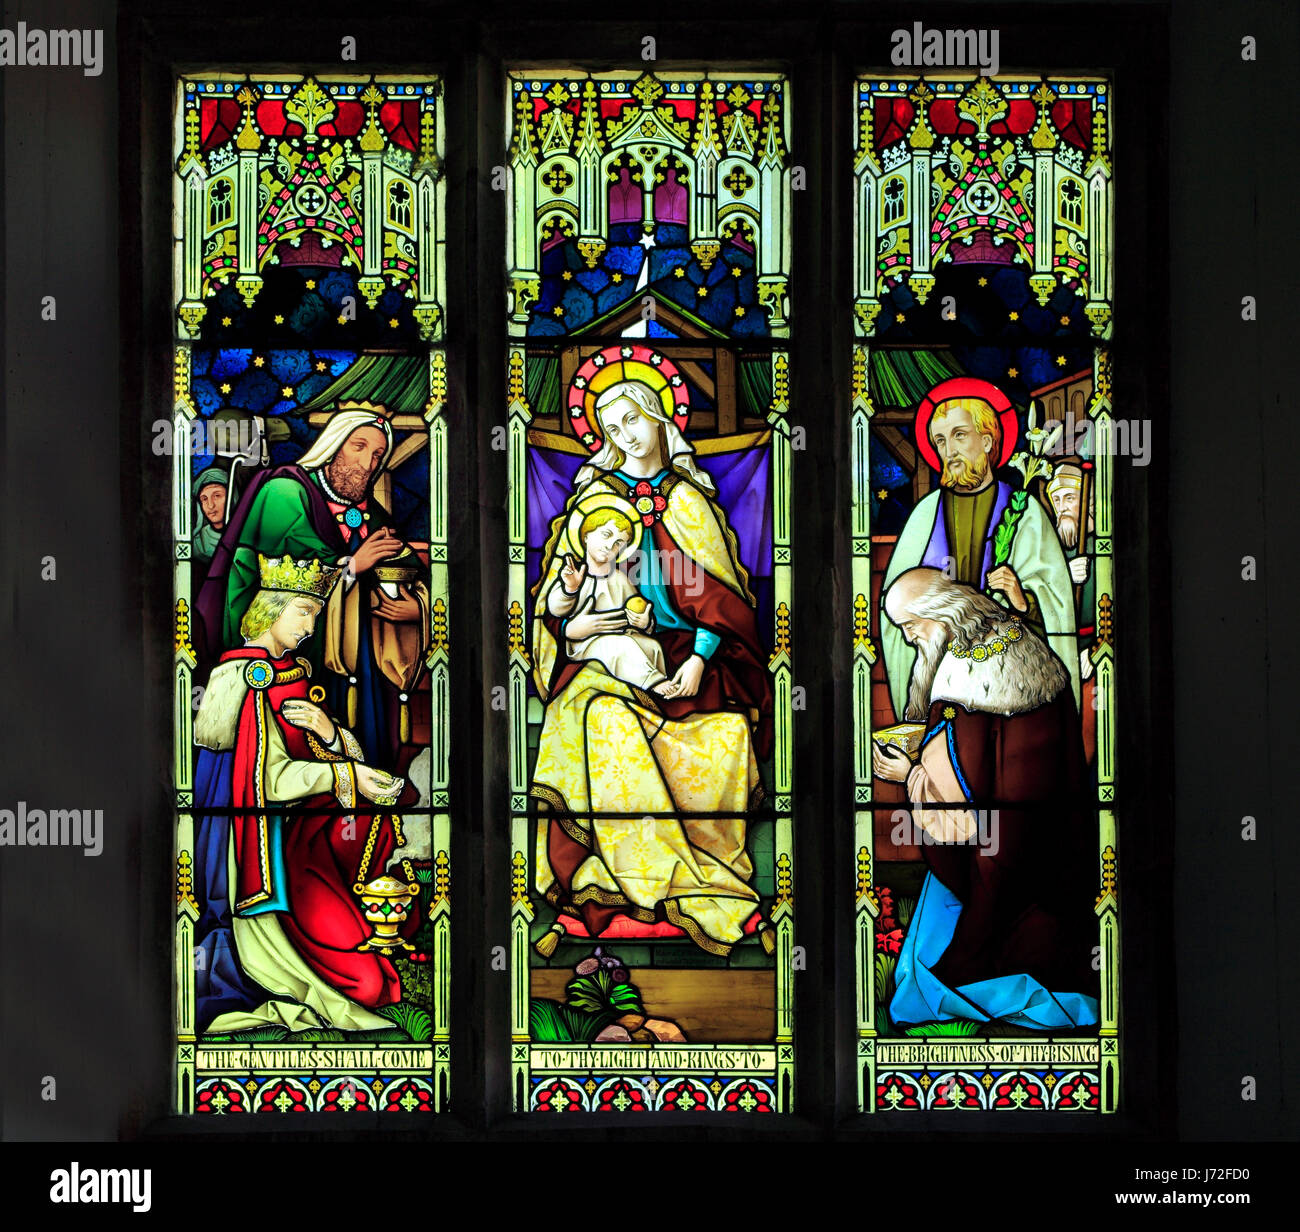 Heilige drei Könige, drei Könige, weisen, Glasfenster von Mayer & Co. 1873, Brinton, Norfolk, England, UK Stockfoto